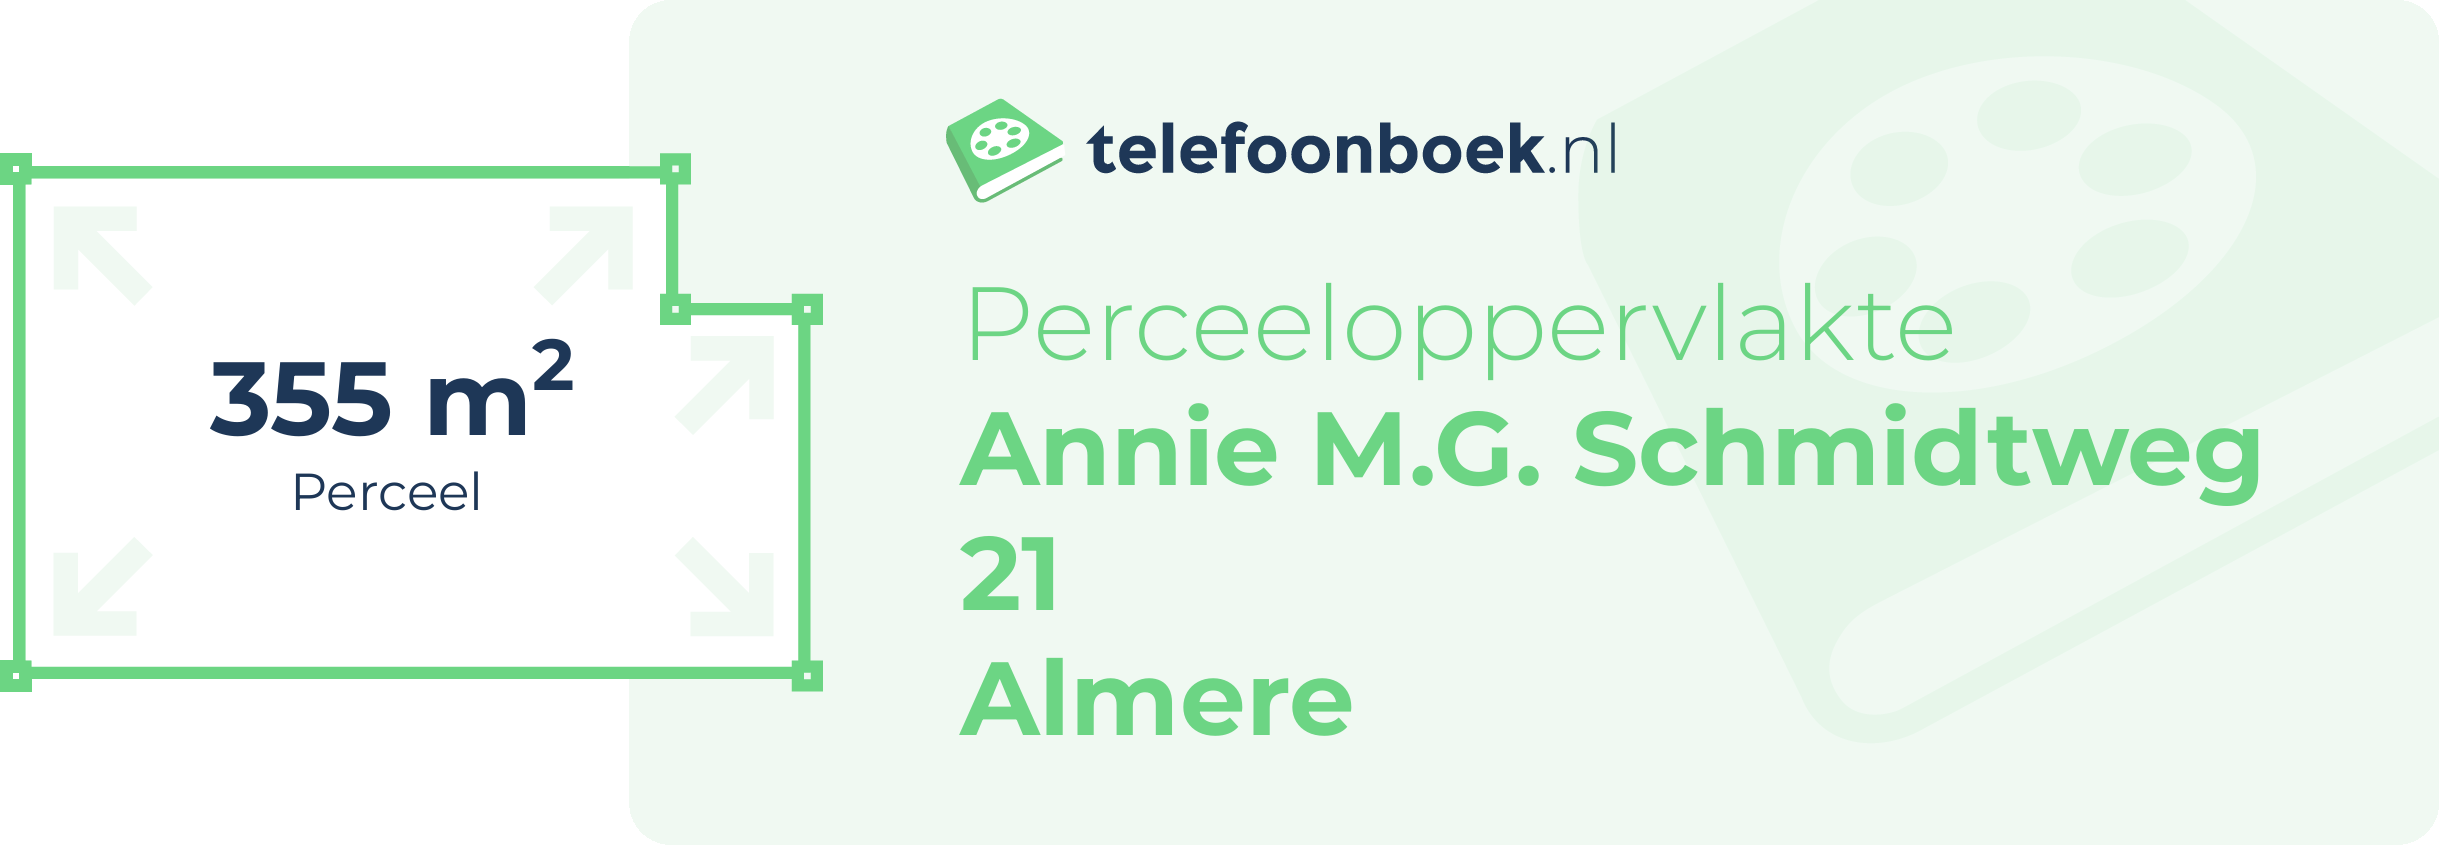 Perceeloppervlakte Annie M.G. Schmidtweg 21 Almere